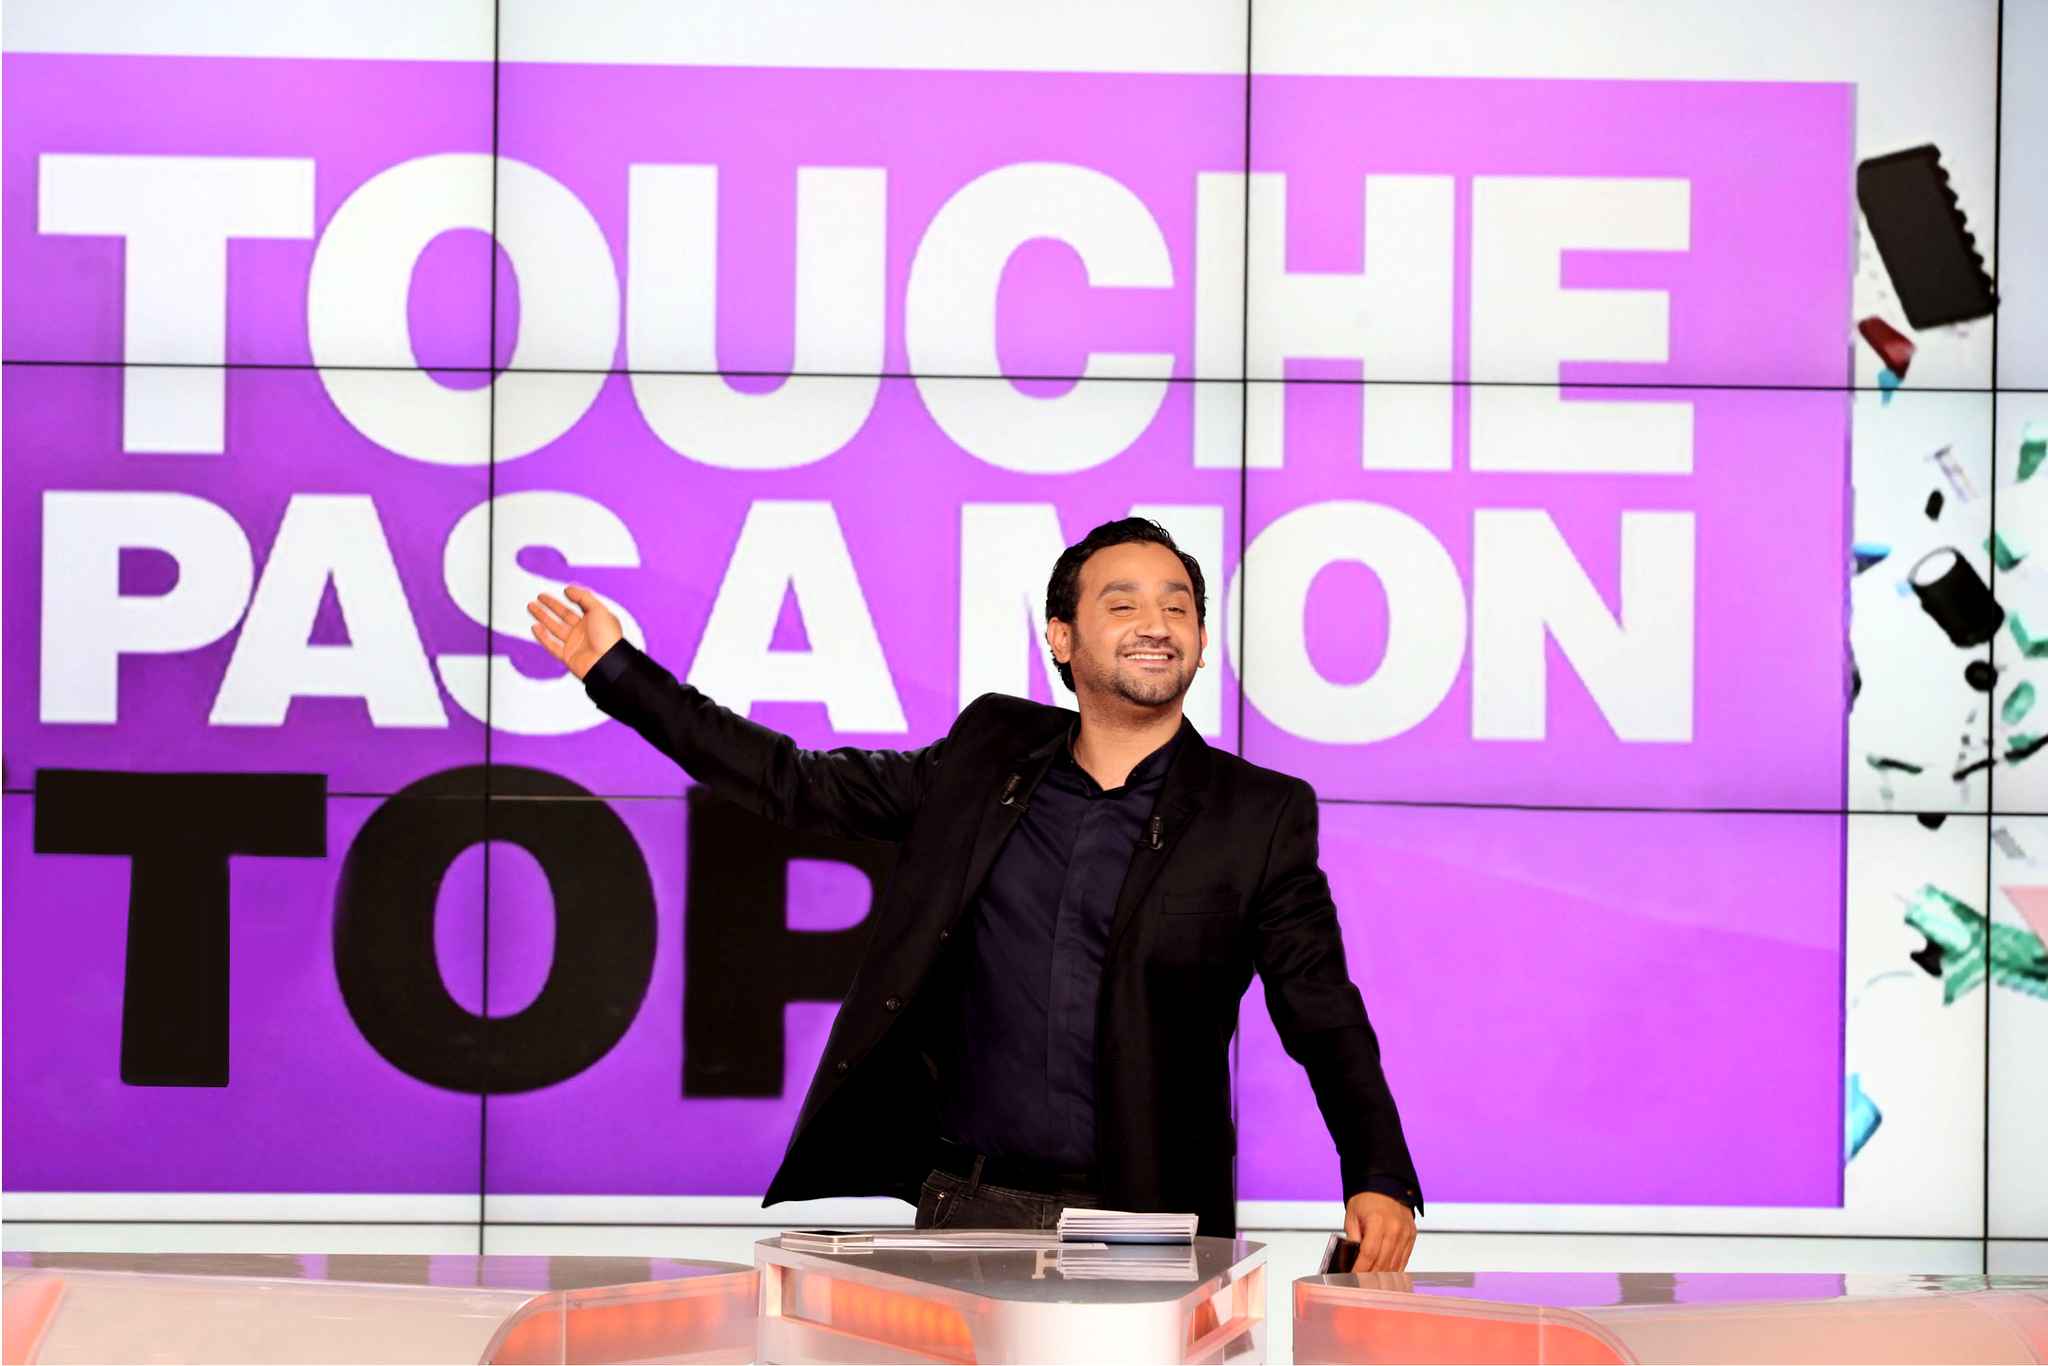 Multado un canal de TV francés por homofobia en directo